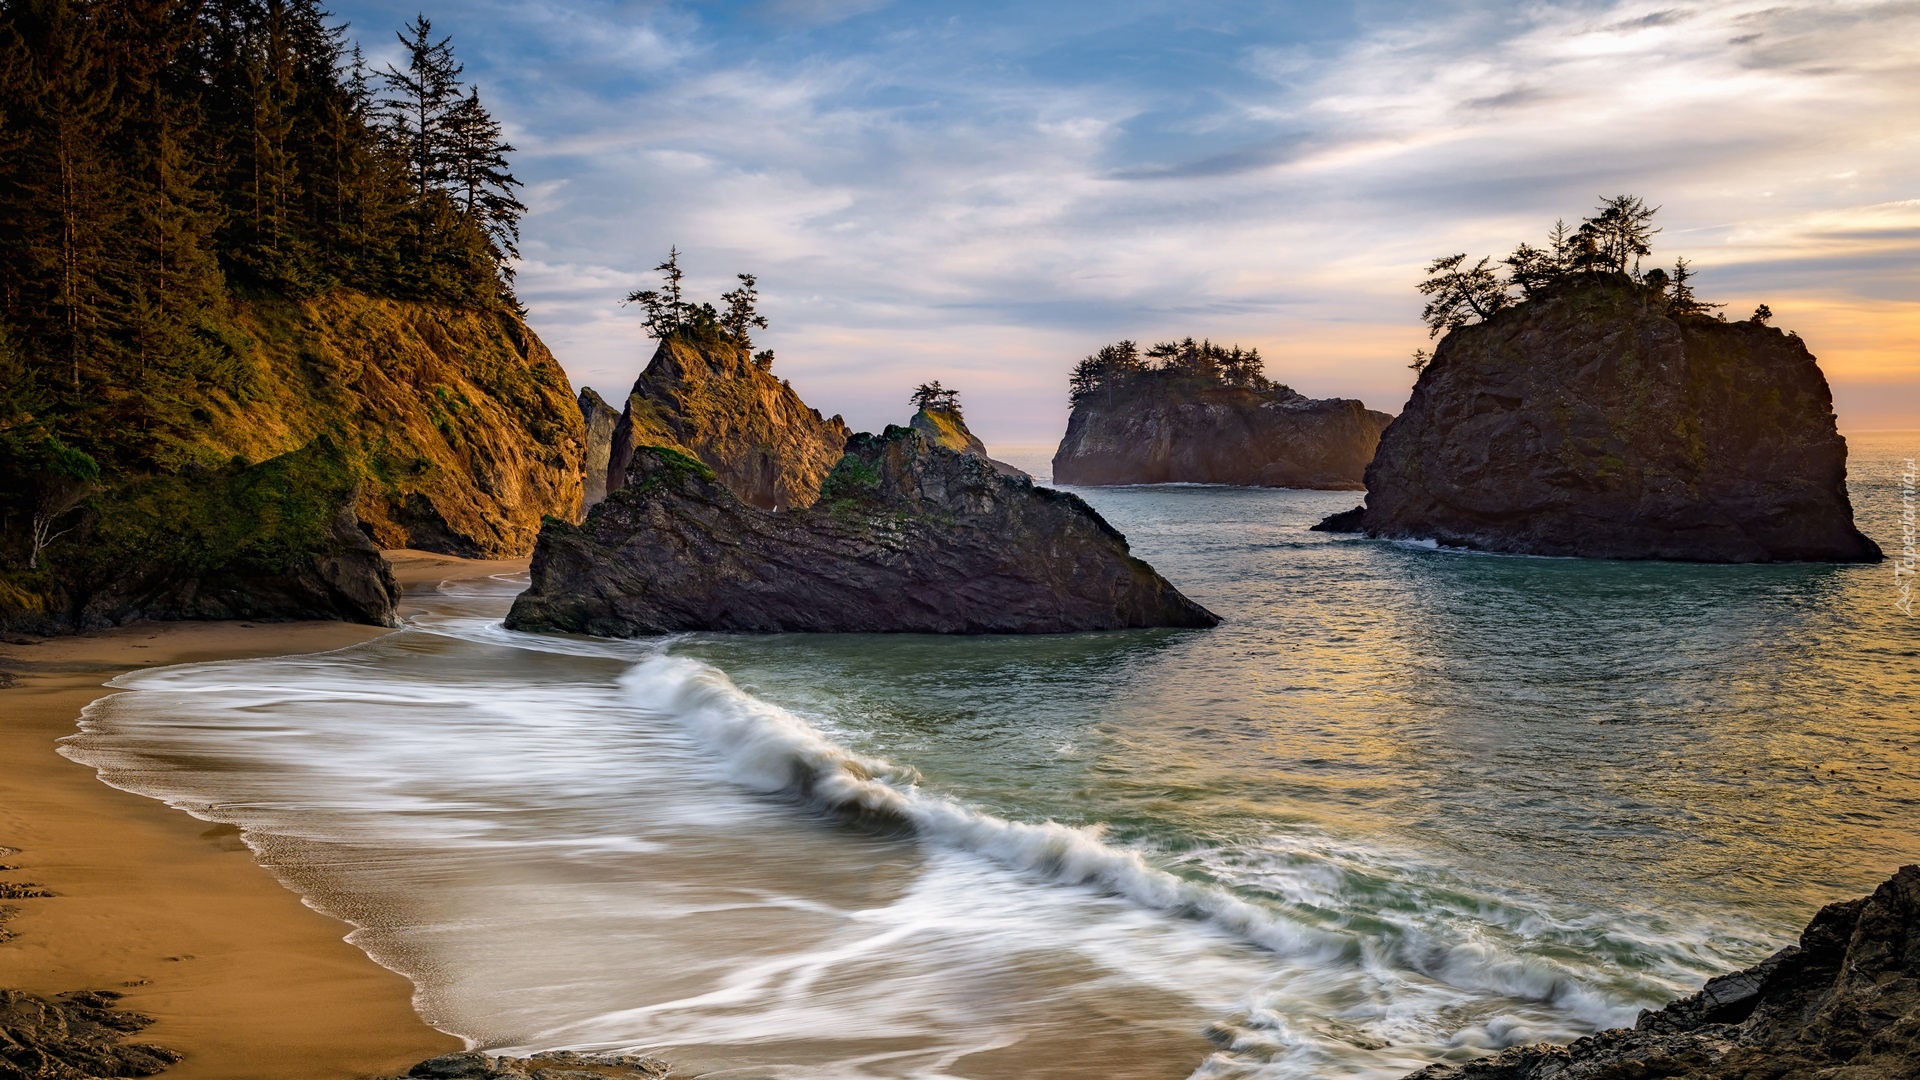 Morze, Skały, Drzewa, Wybrzeże, Park stanowy, Samuel H Boardman State Scenic Corridor, Oregon, Stany Zjednoczone